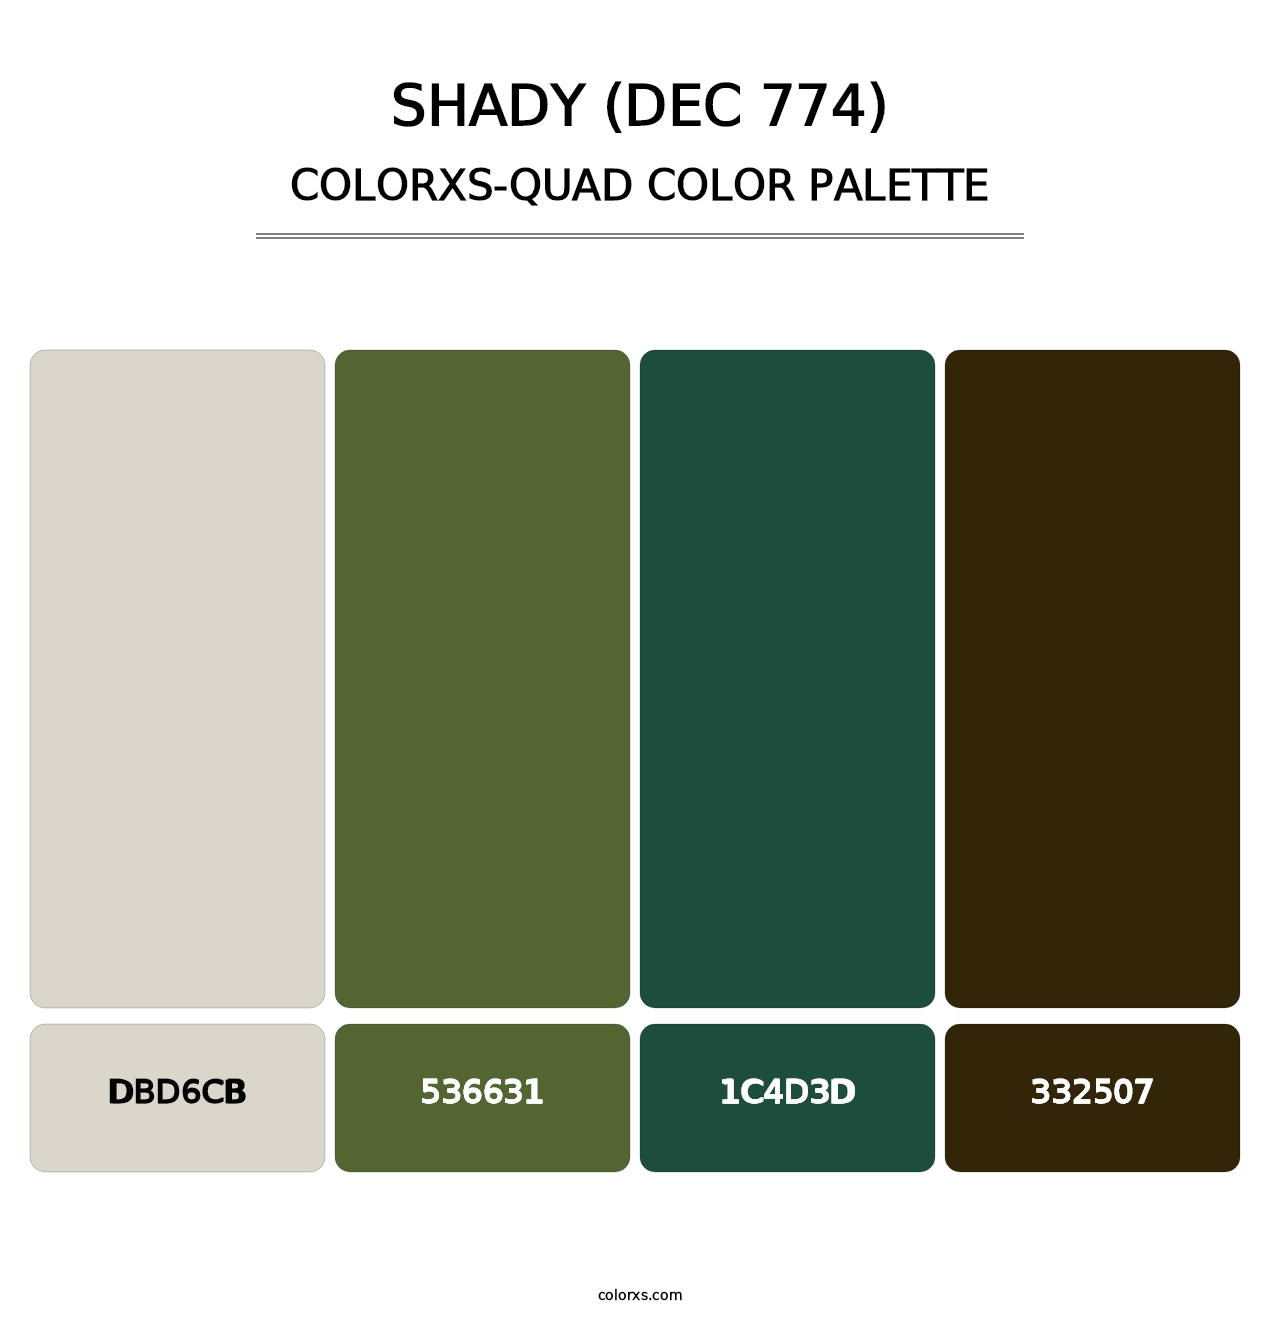 Shady (DEC 774) - Colorxs Quad Palette